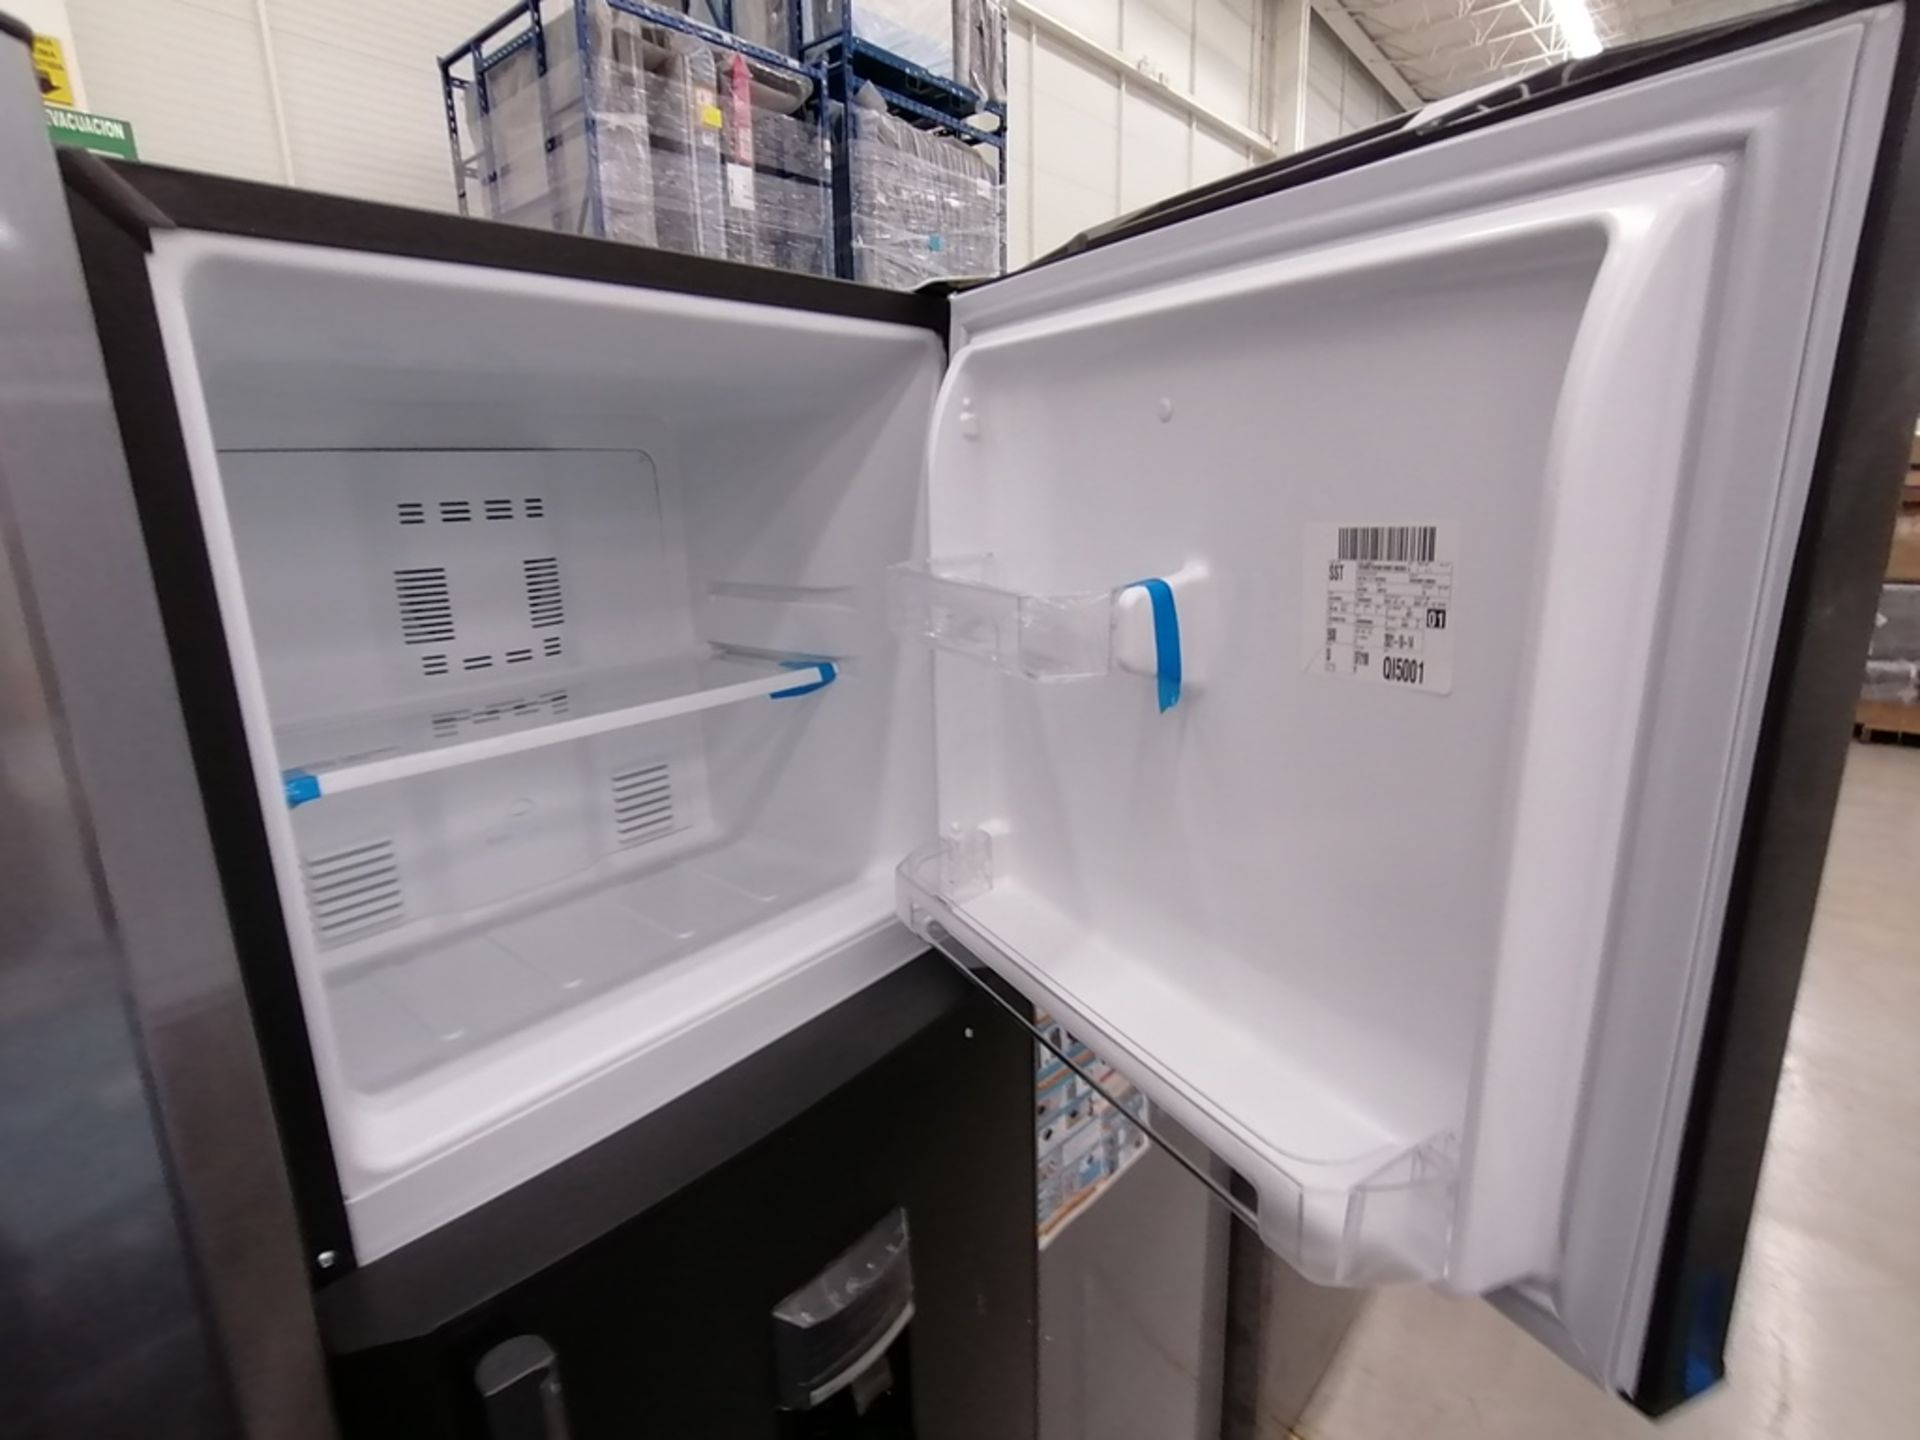 Lote de 2 refrigeradores incluye: 1 Refrigerador con dispensador de agua, Marca Mabe, Modelo RMA300 - Image 11 of 15